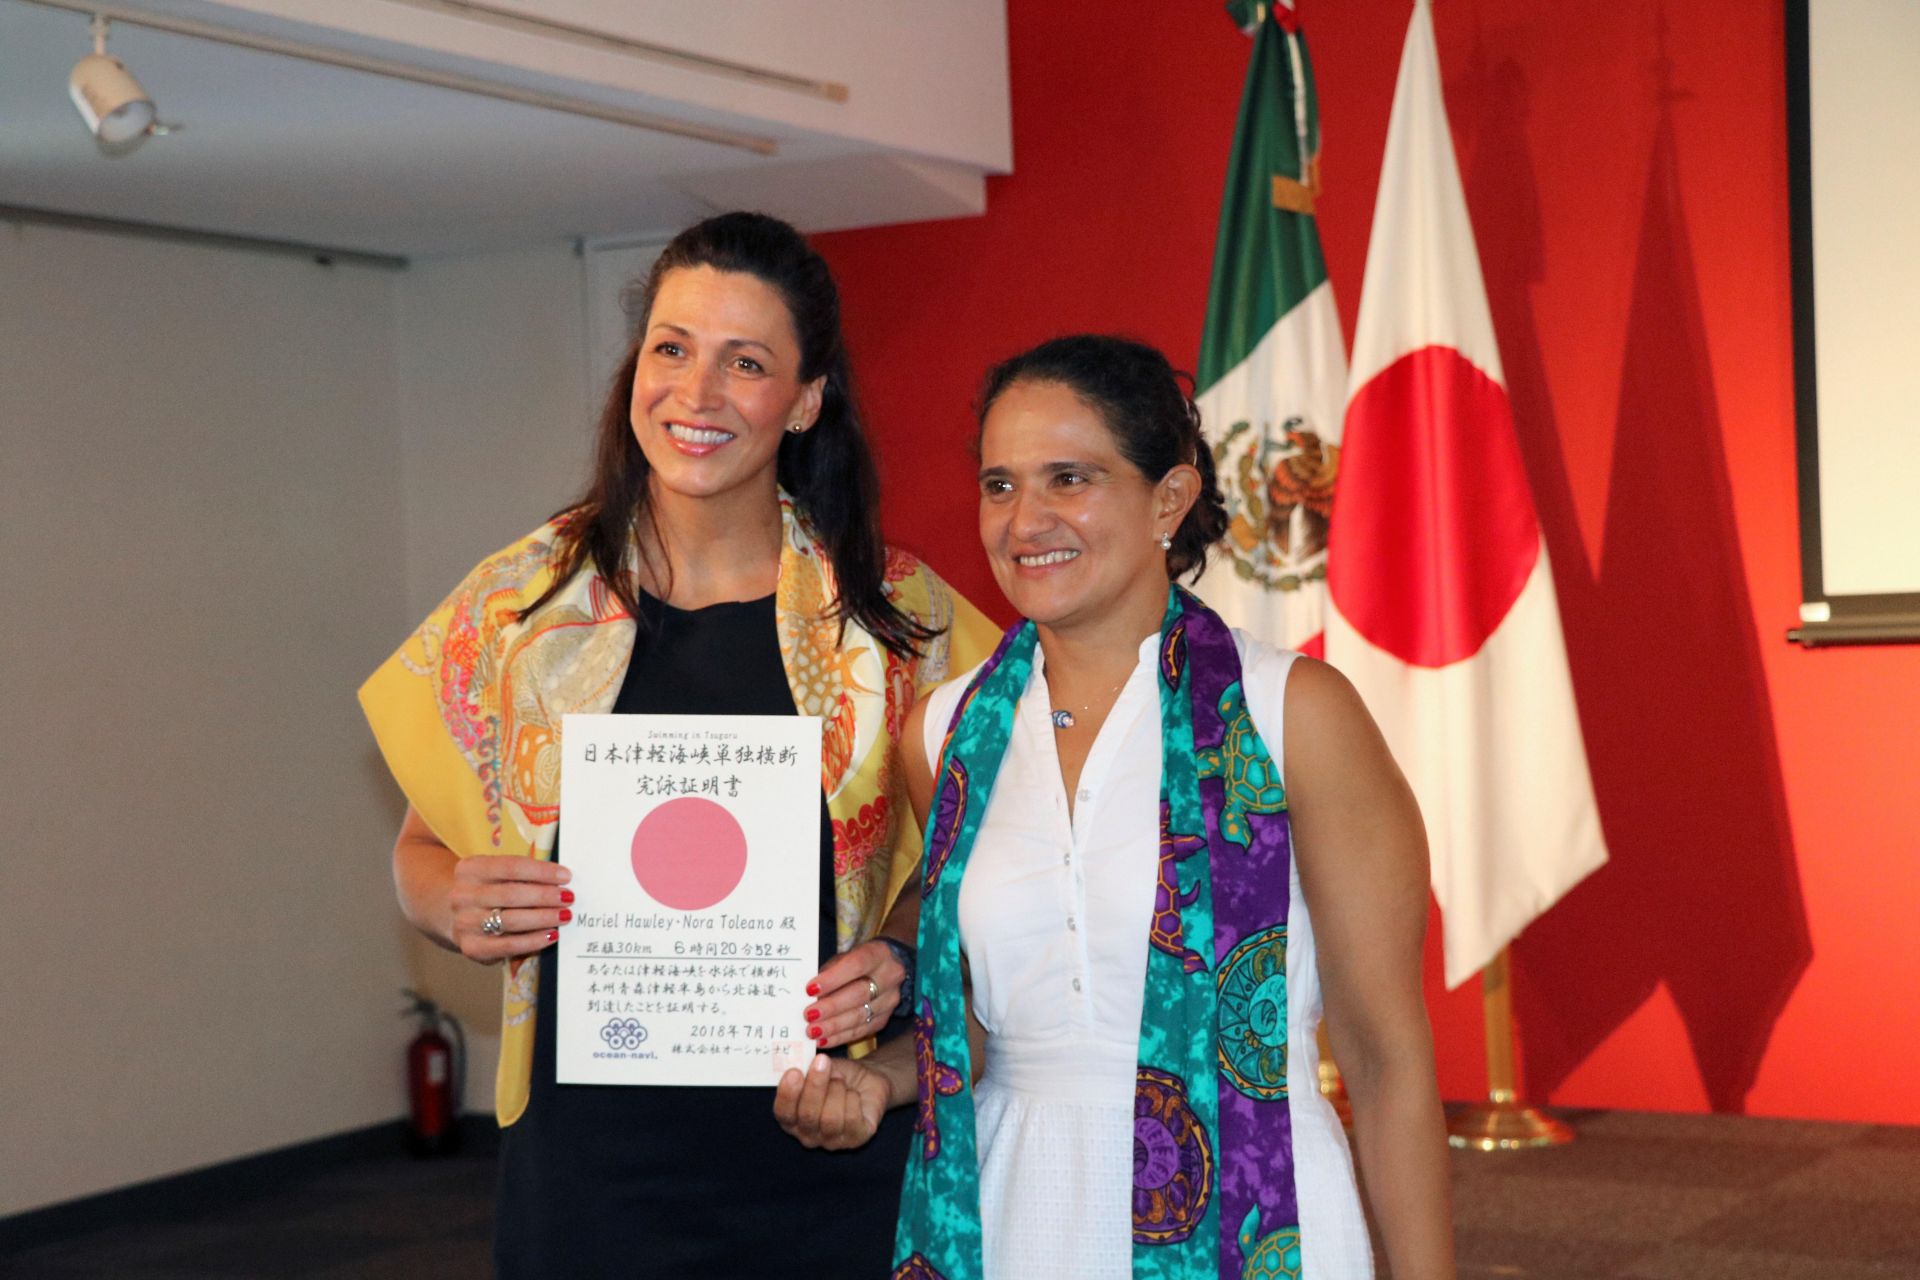  Las mexicanas Mariel Hawley (i) y Nora Toledano, recibieron hoy un reconocimiento en la Embajada de México en Tokio por haber conseguido cruzar en un tiempo récord el Estrecho de Tsugaru (norte de Japón), sumando así el quinto mar del proyecto de los Siete Mares.